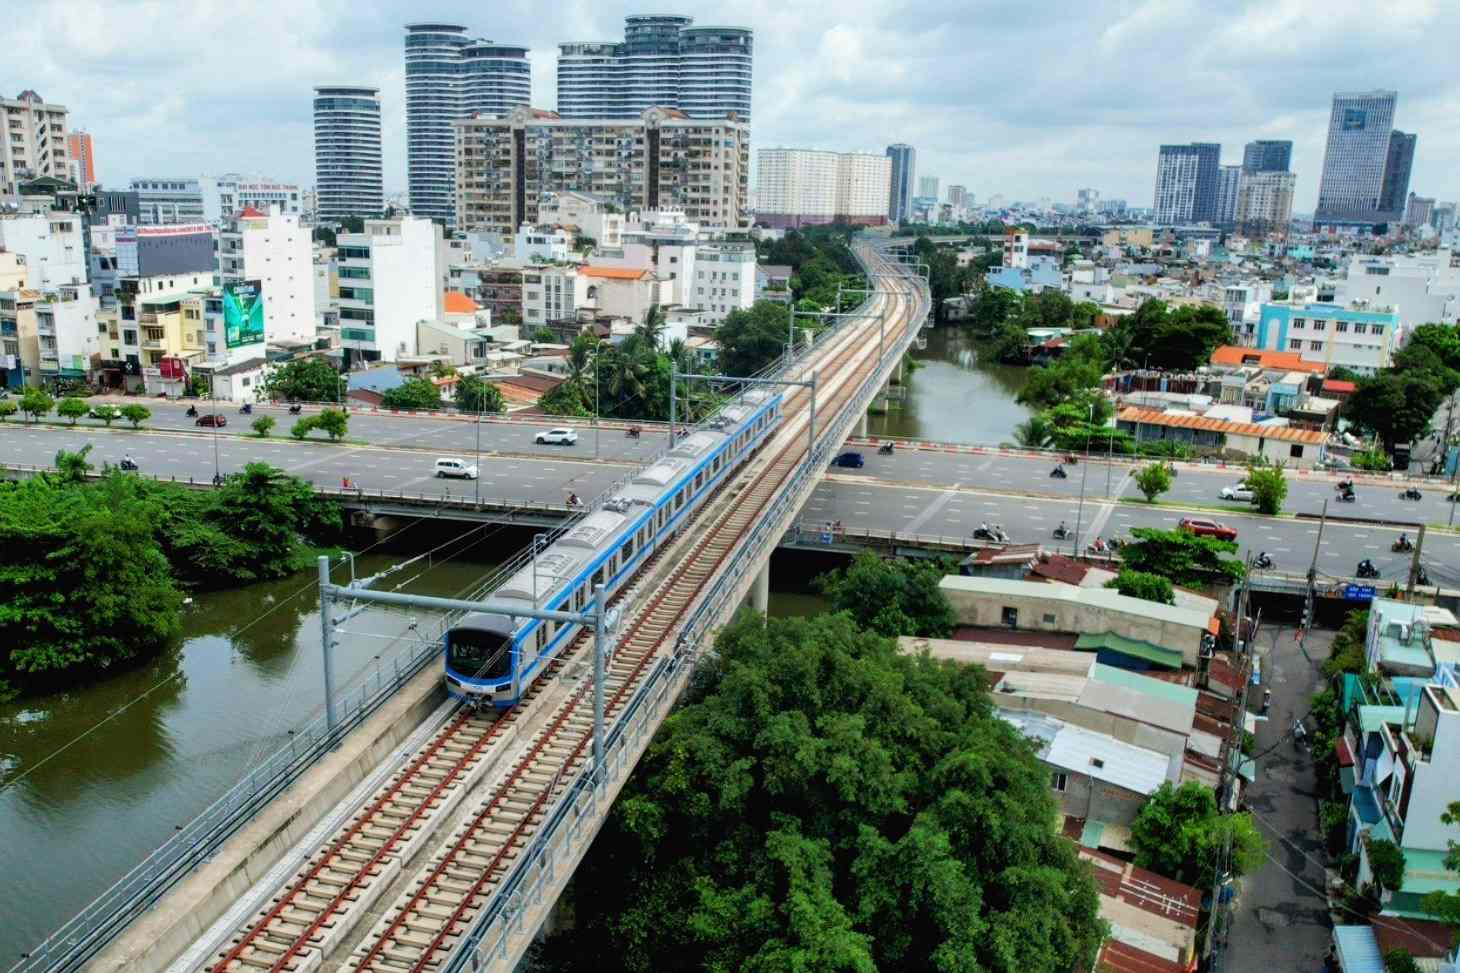 ODA của Nhật Bản tập trung vào các lĩnh vực trọng điểm như giao thông, năng lượng và cơ sở hạ tầng đô thị ở Việt Nam, trong đó có tuyến đường sắt đô thị (Metro) số 1 Thành phố Hồ Chí Minh. Ảnh: Anh Tú